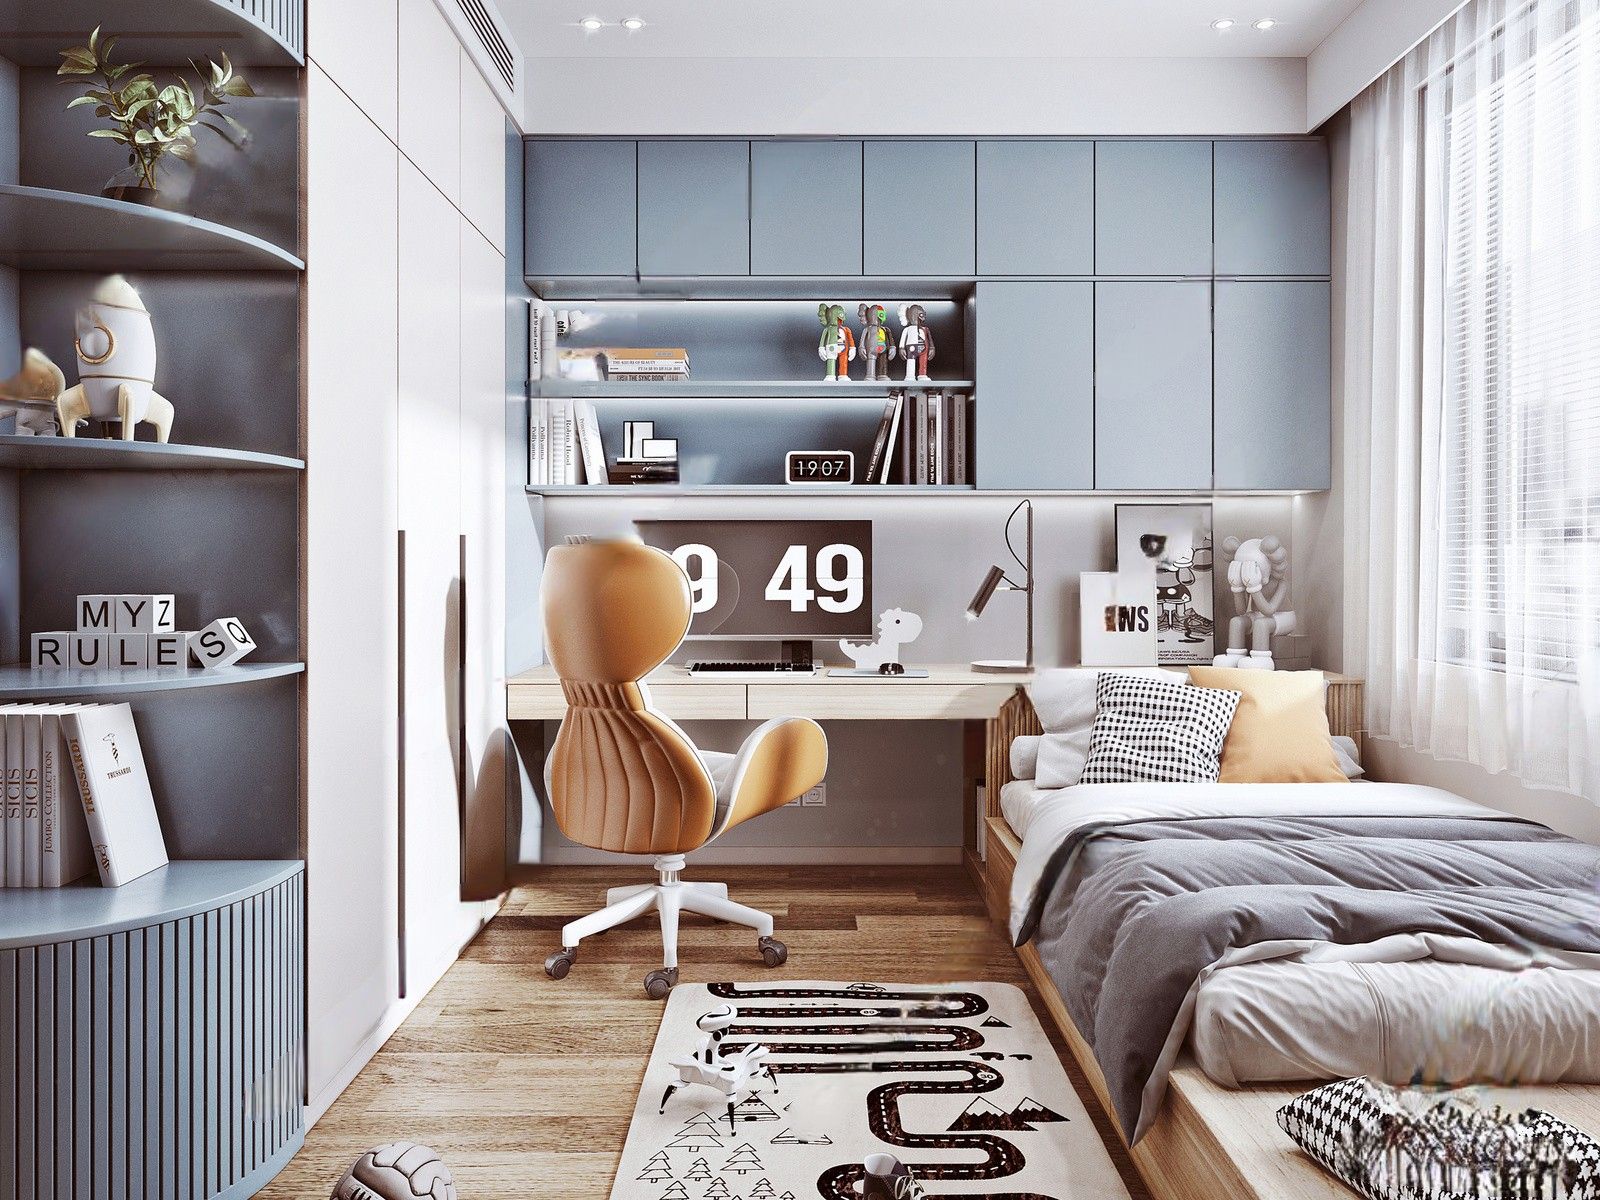 Thiết kế phòng ngủ bé trai với gam màu xanh dương pastel cùng nội thất thông minh ấn tượng